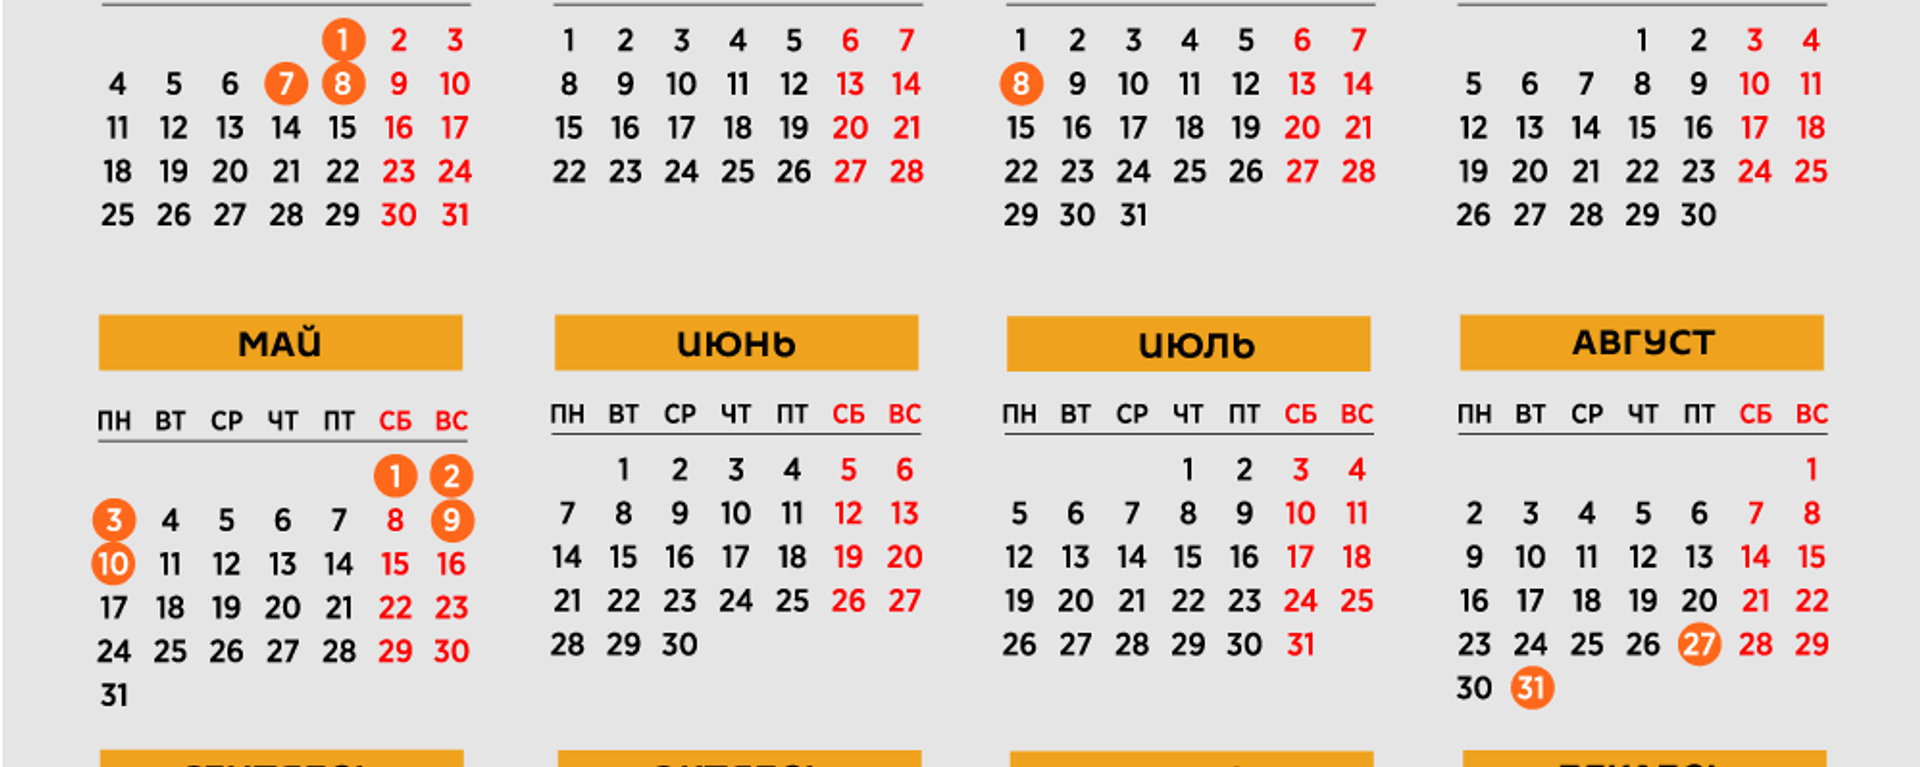 Календарь праздничных и выходных дней в Молдове на 2021 год - Sputnik Молдова, 1920, 24.10.2020